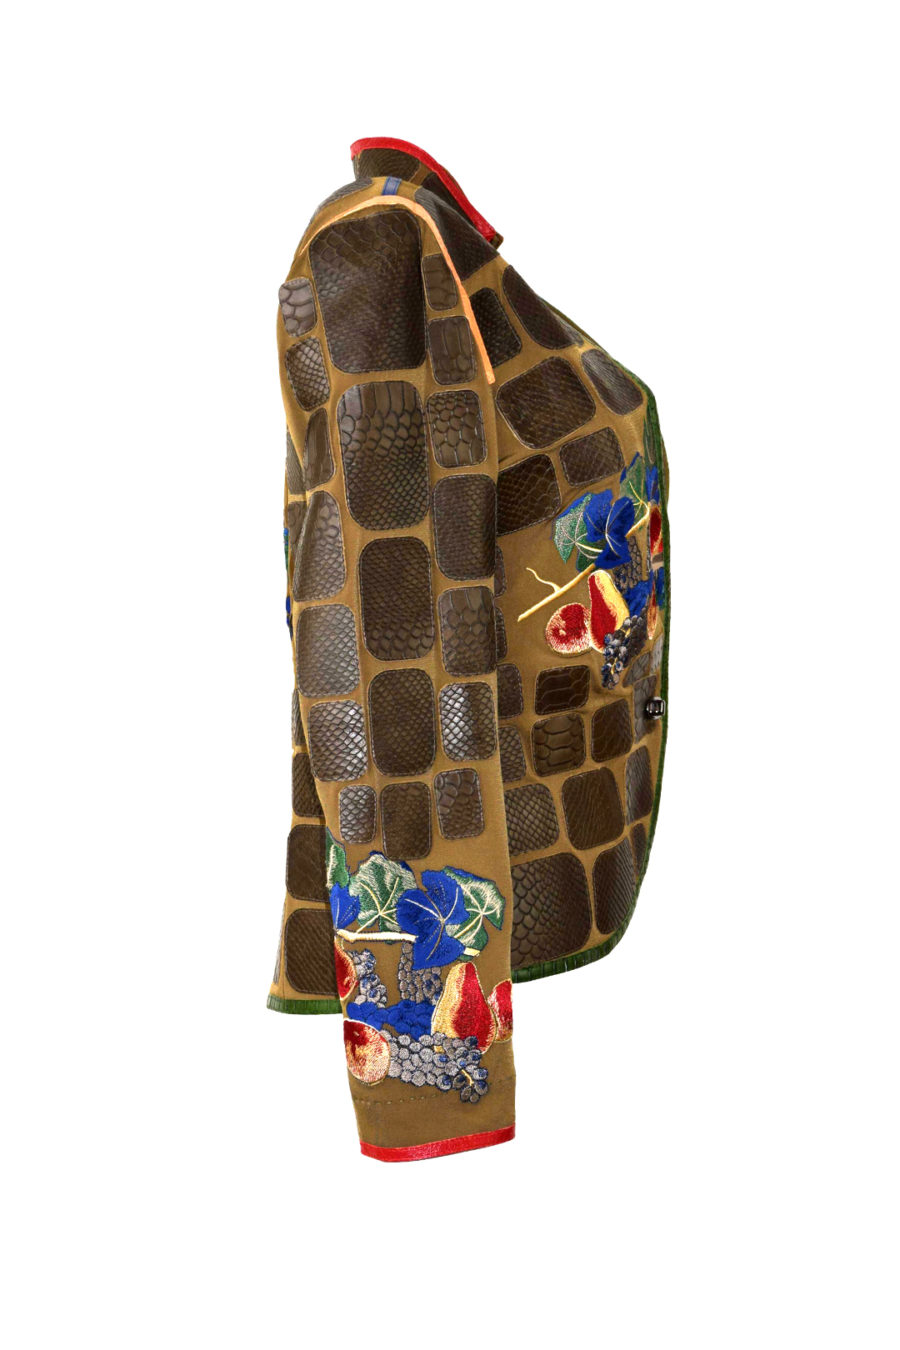 Jacke, oliv mit multicolor- Kontrasten, Krokopatches und "Still-Life-embroidery" Patches: ab 130 Stück, stitches: 206.000